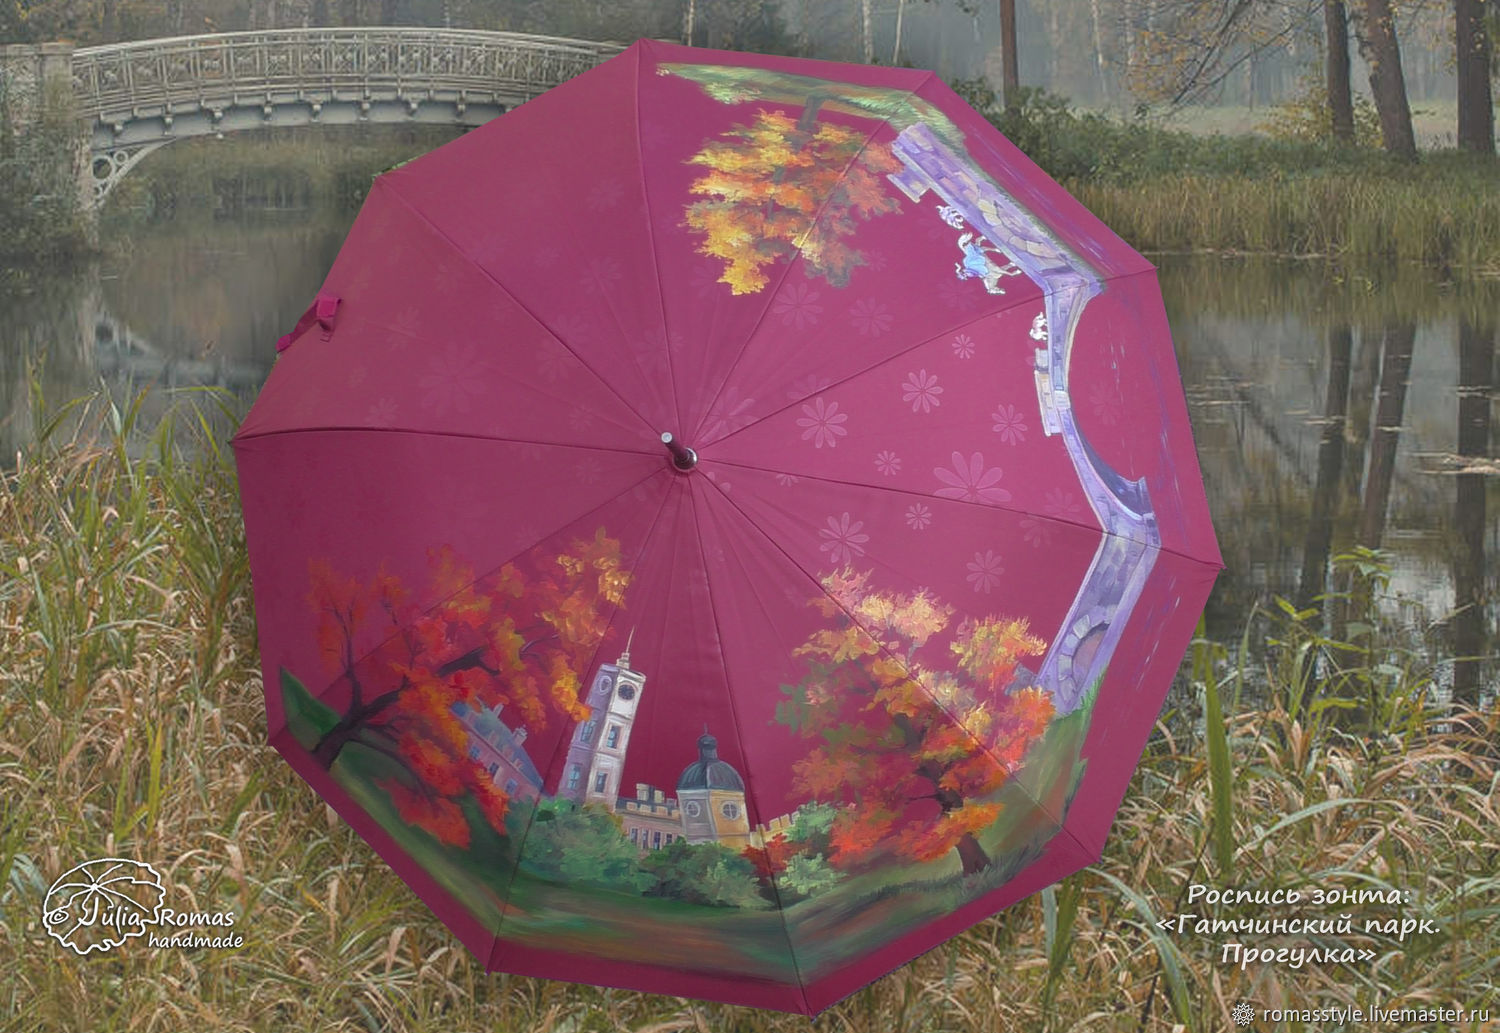 Зонт с росписью "Гатчинский парк. Прогулка", Зонты, Санкт-Петербург,  Фото №1